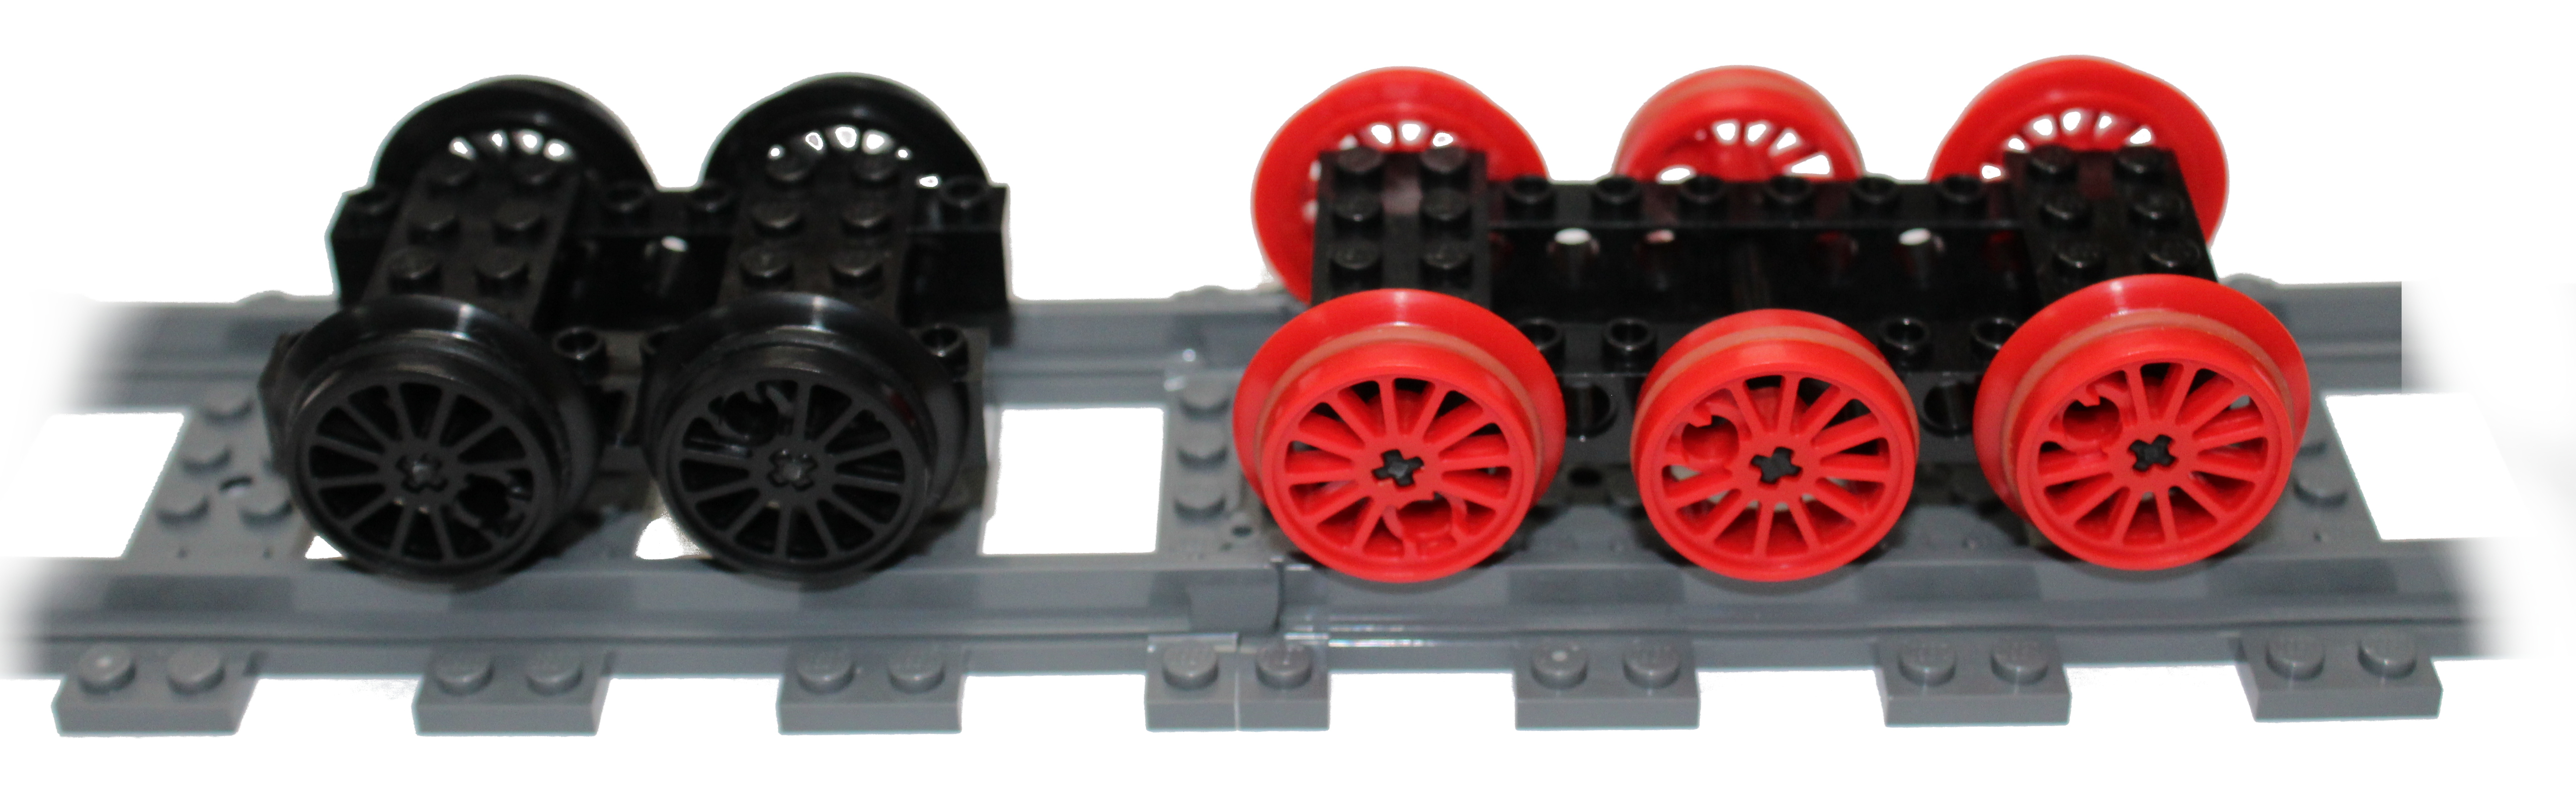 lego train wheels